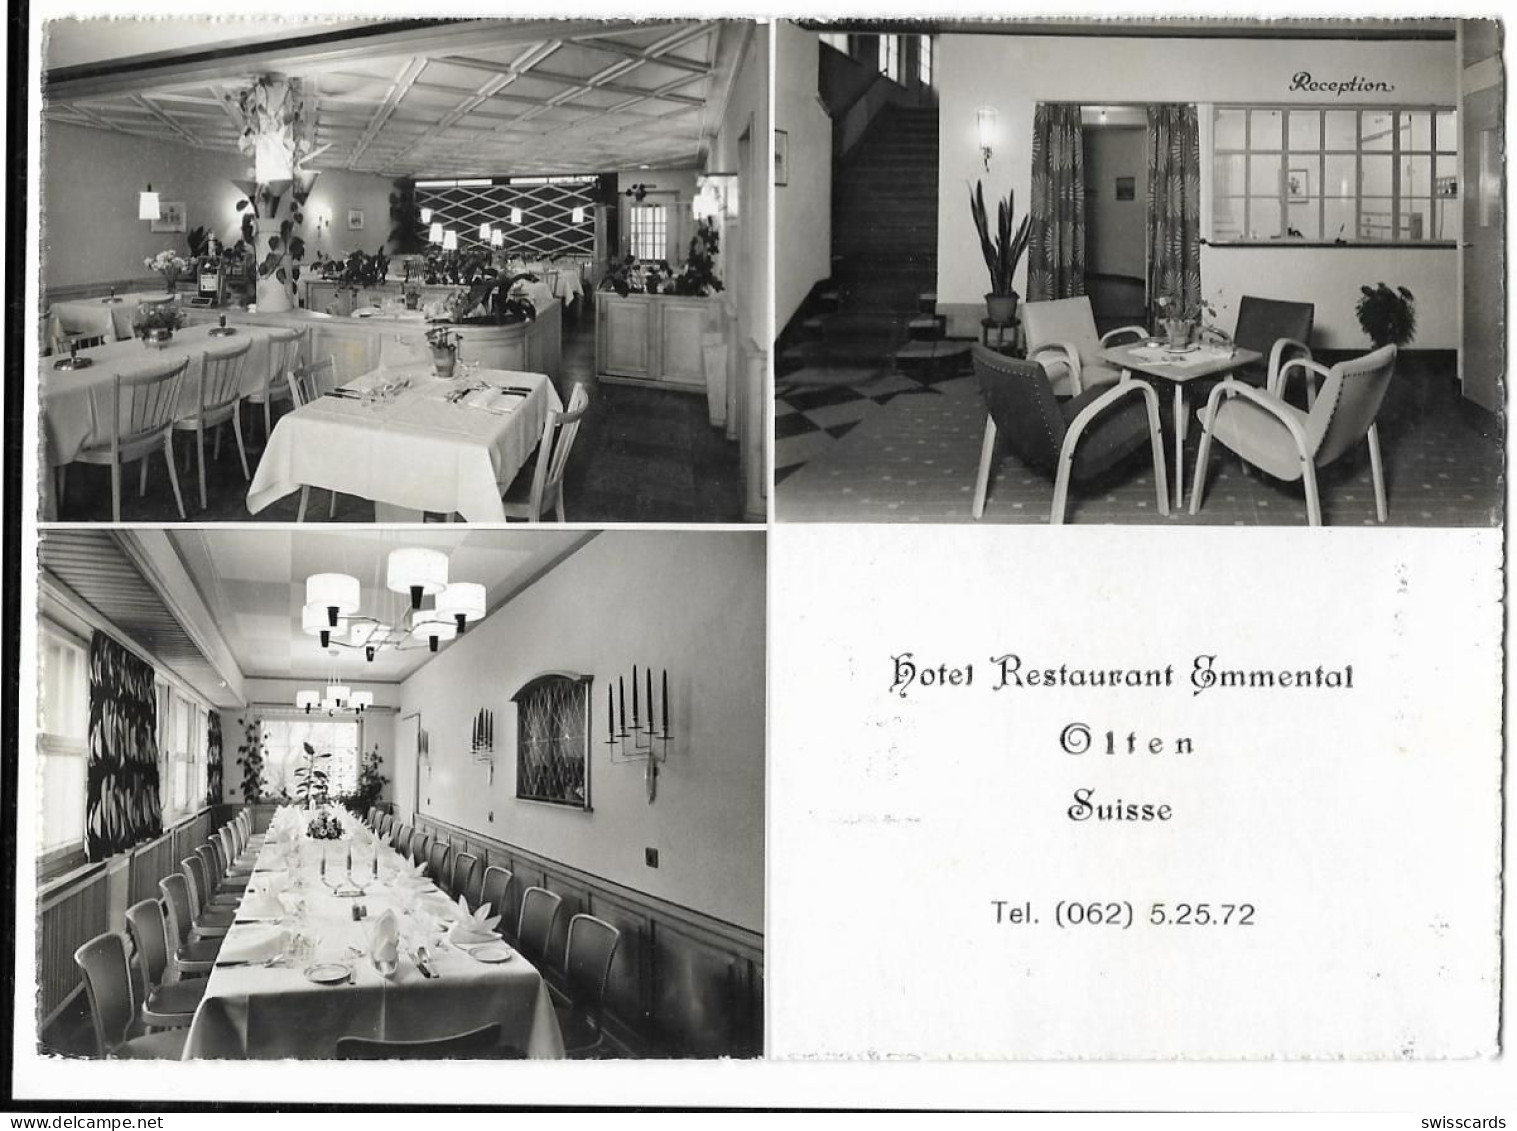 OLTEN: Hotel Restaurant Emmental, 3-Bild-Werbe-AK ~1960 - Olten